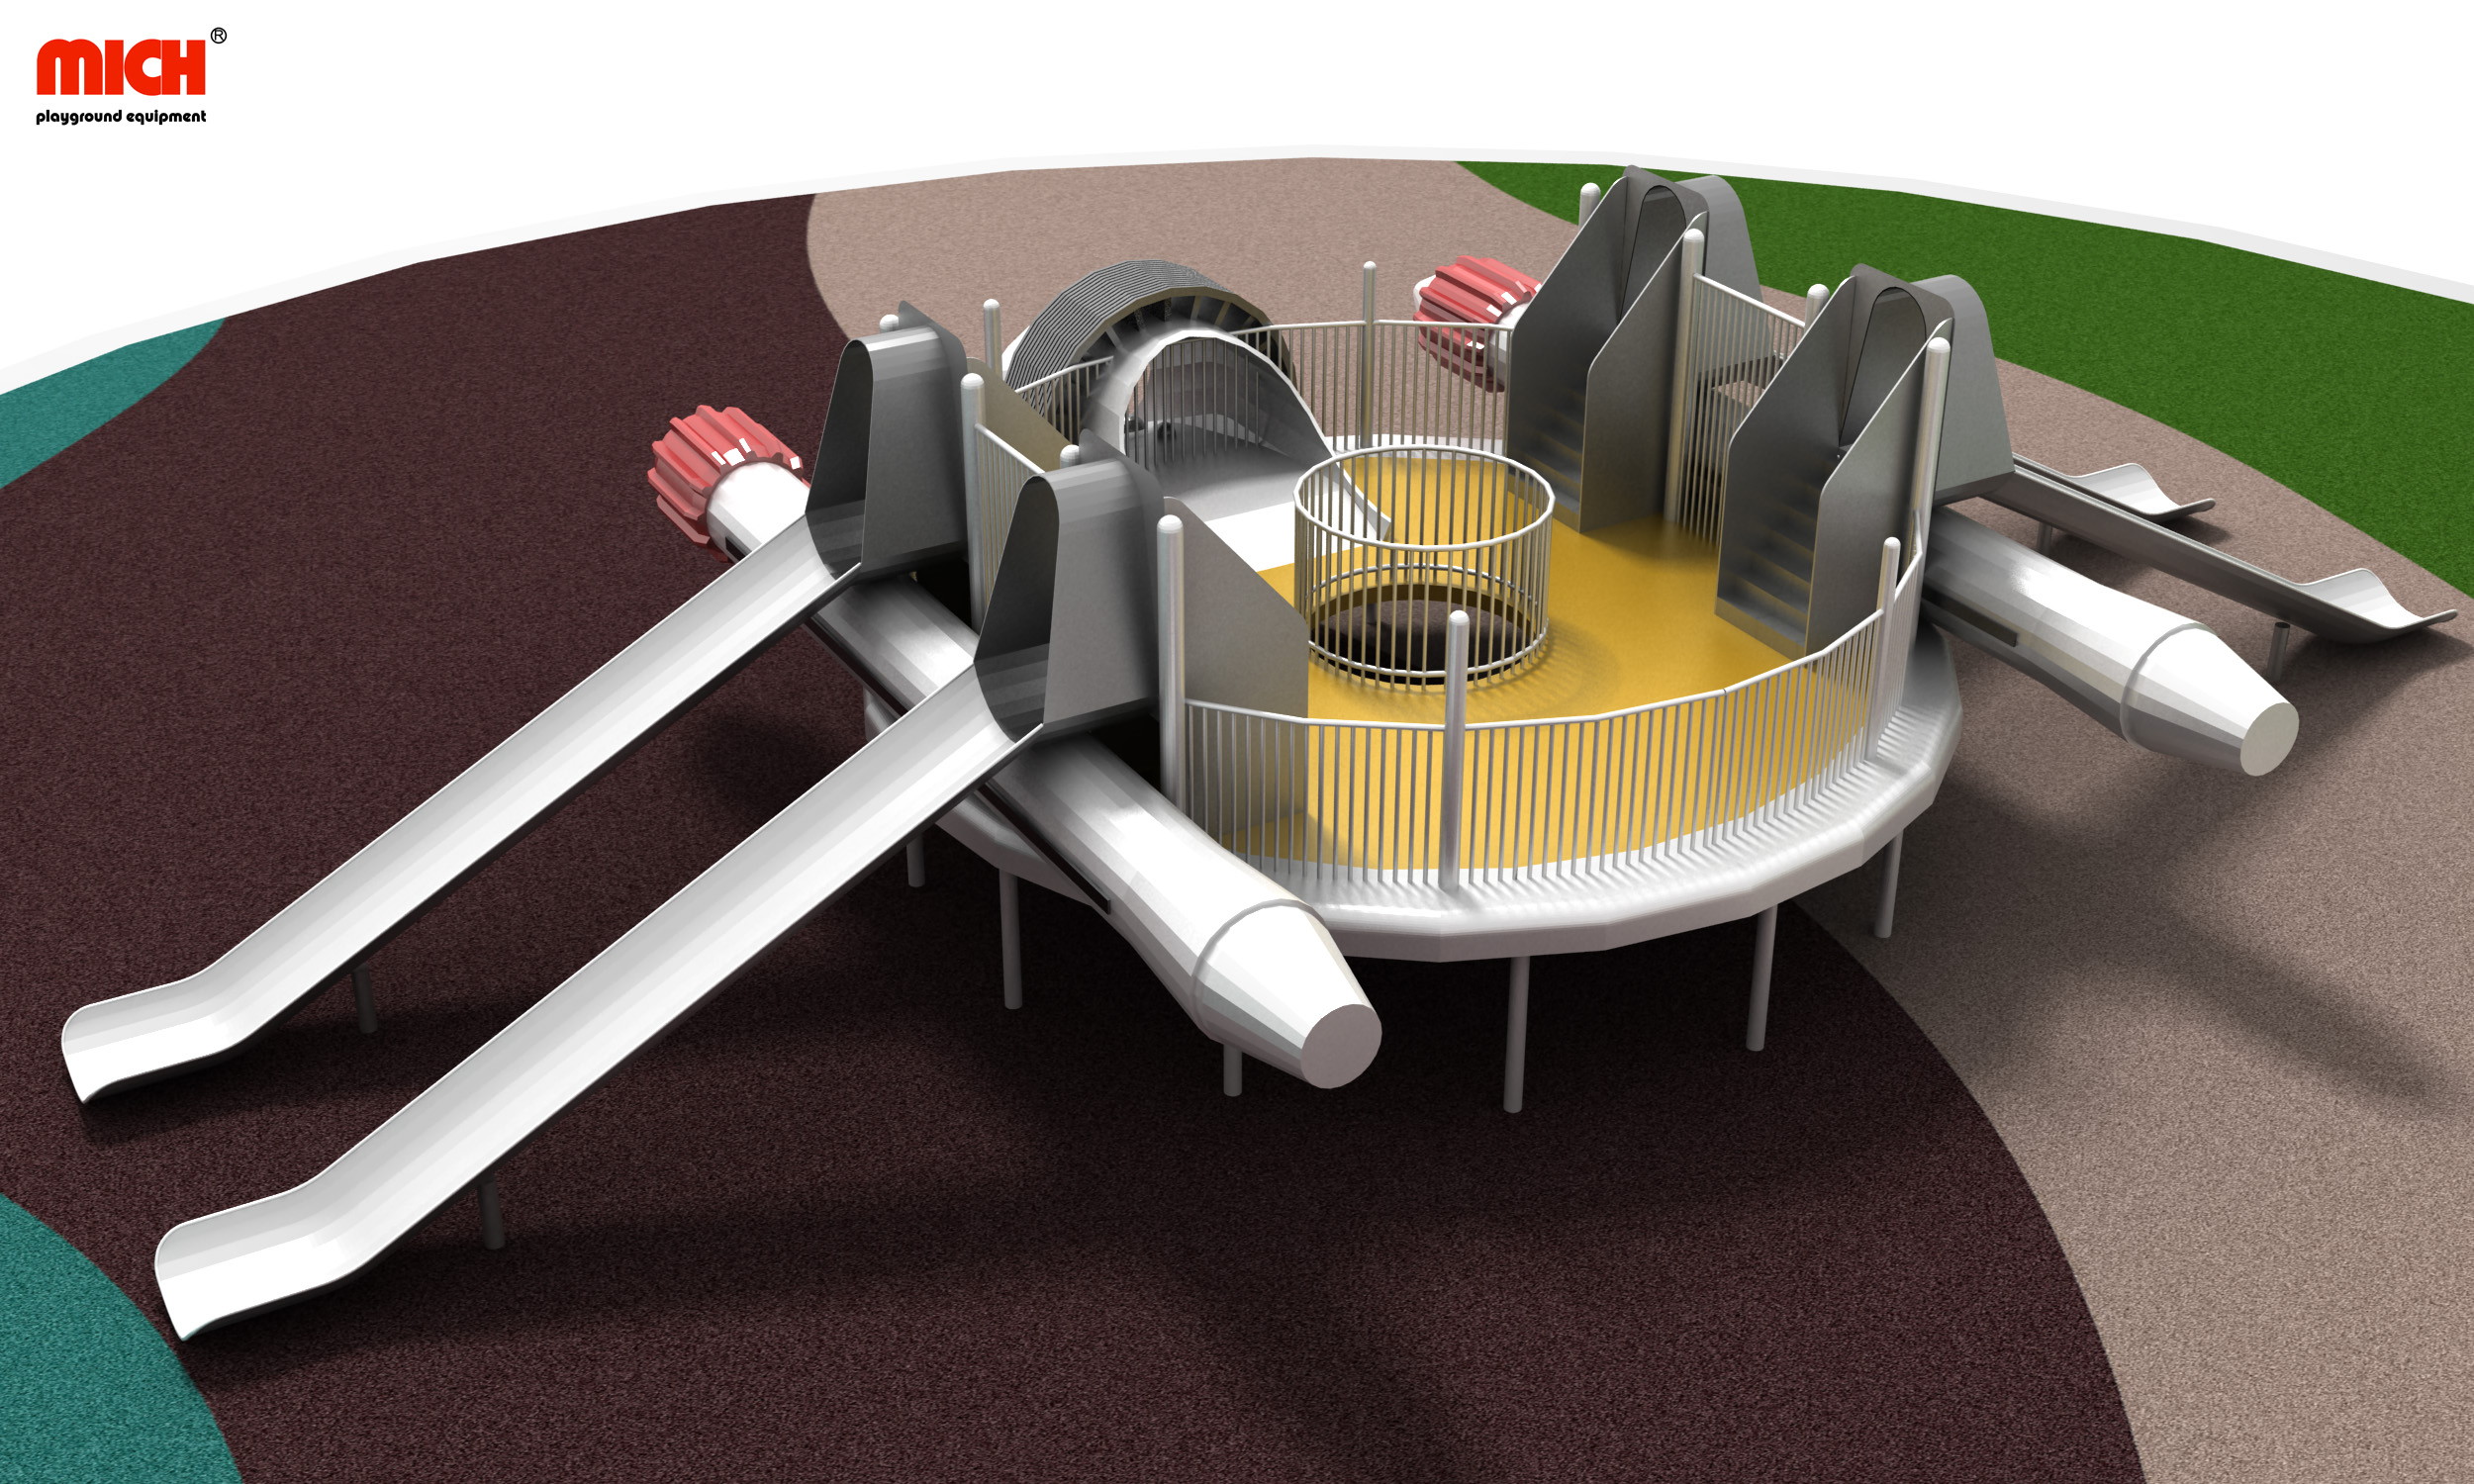 Büyük modern uzay aracı şeklindeki açık hava oyun aktivitesi